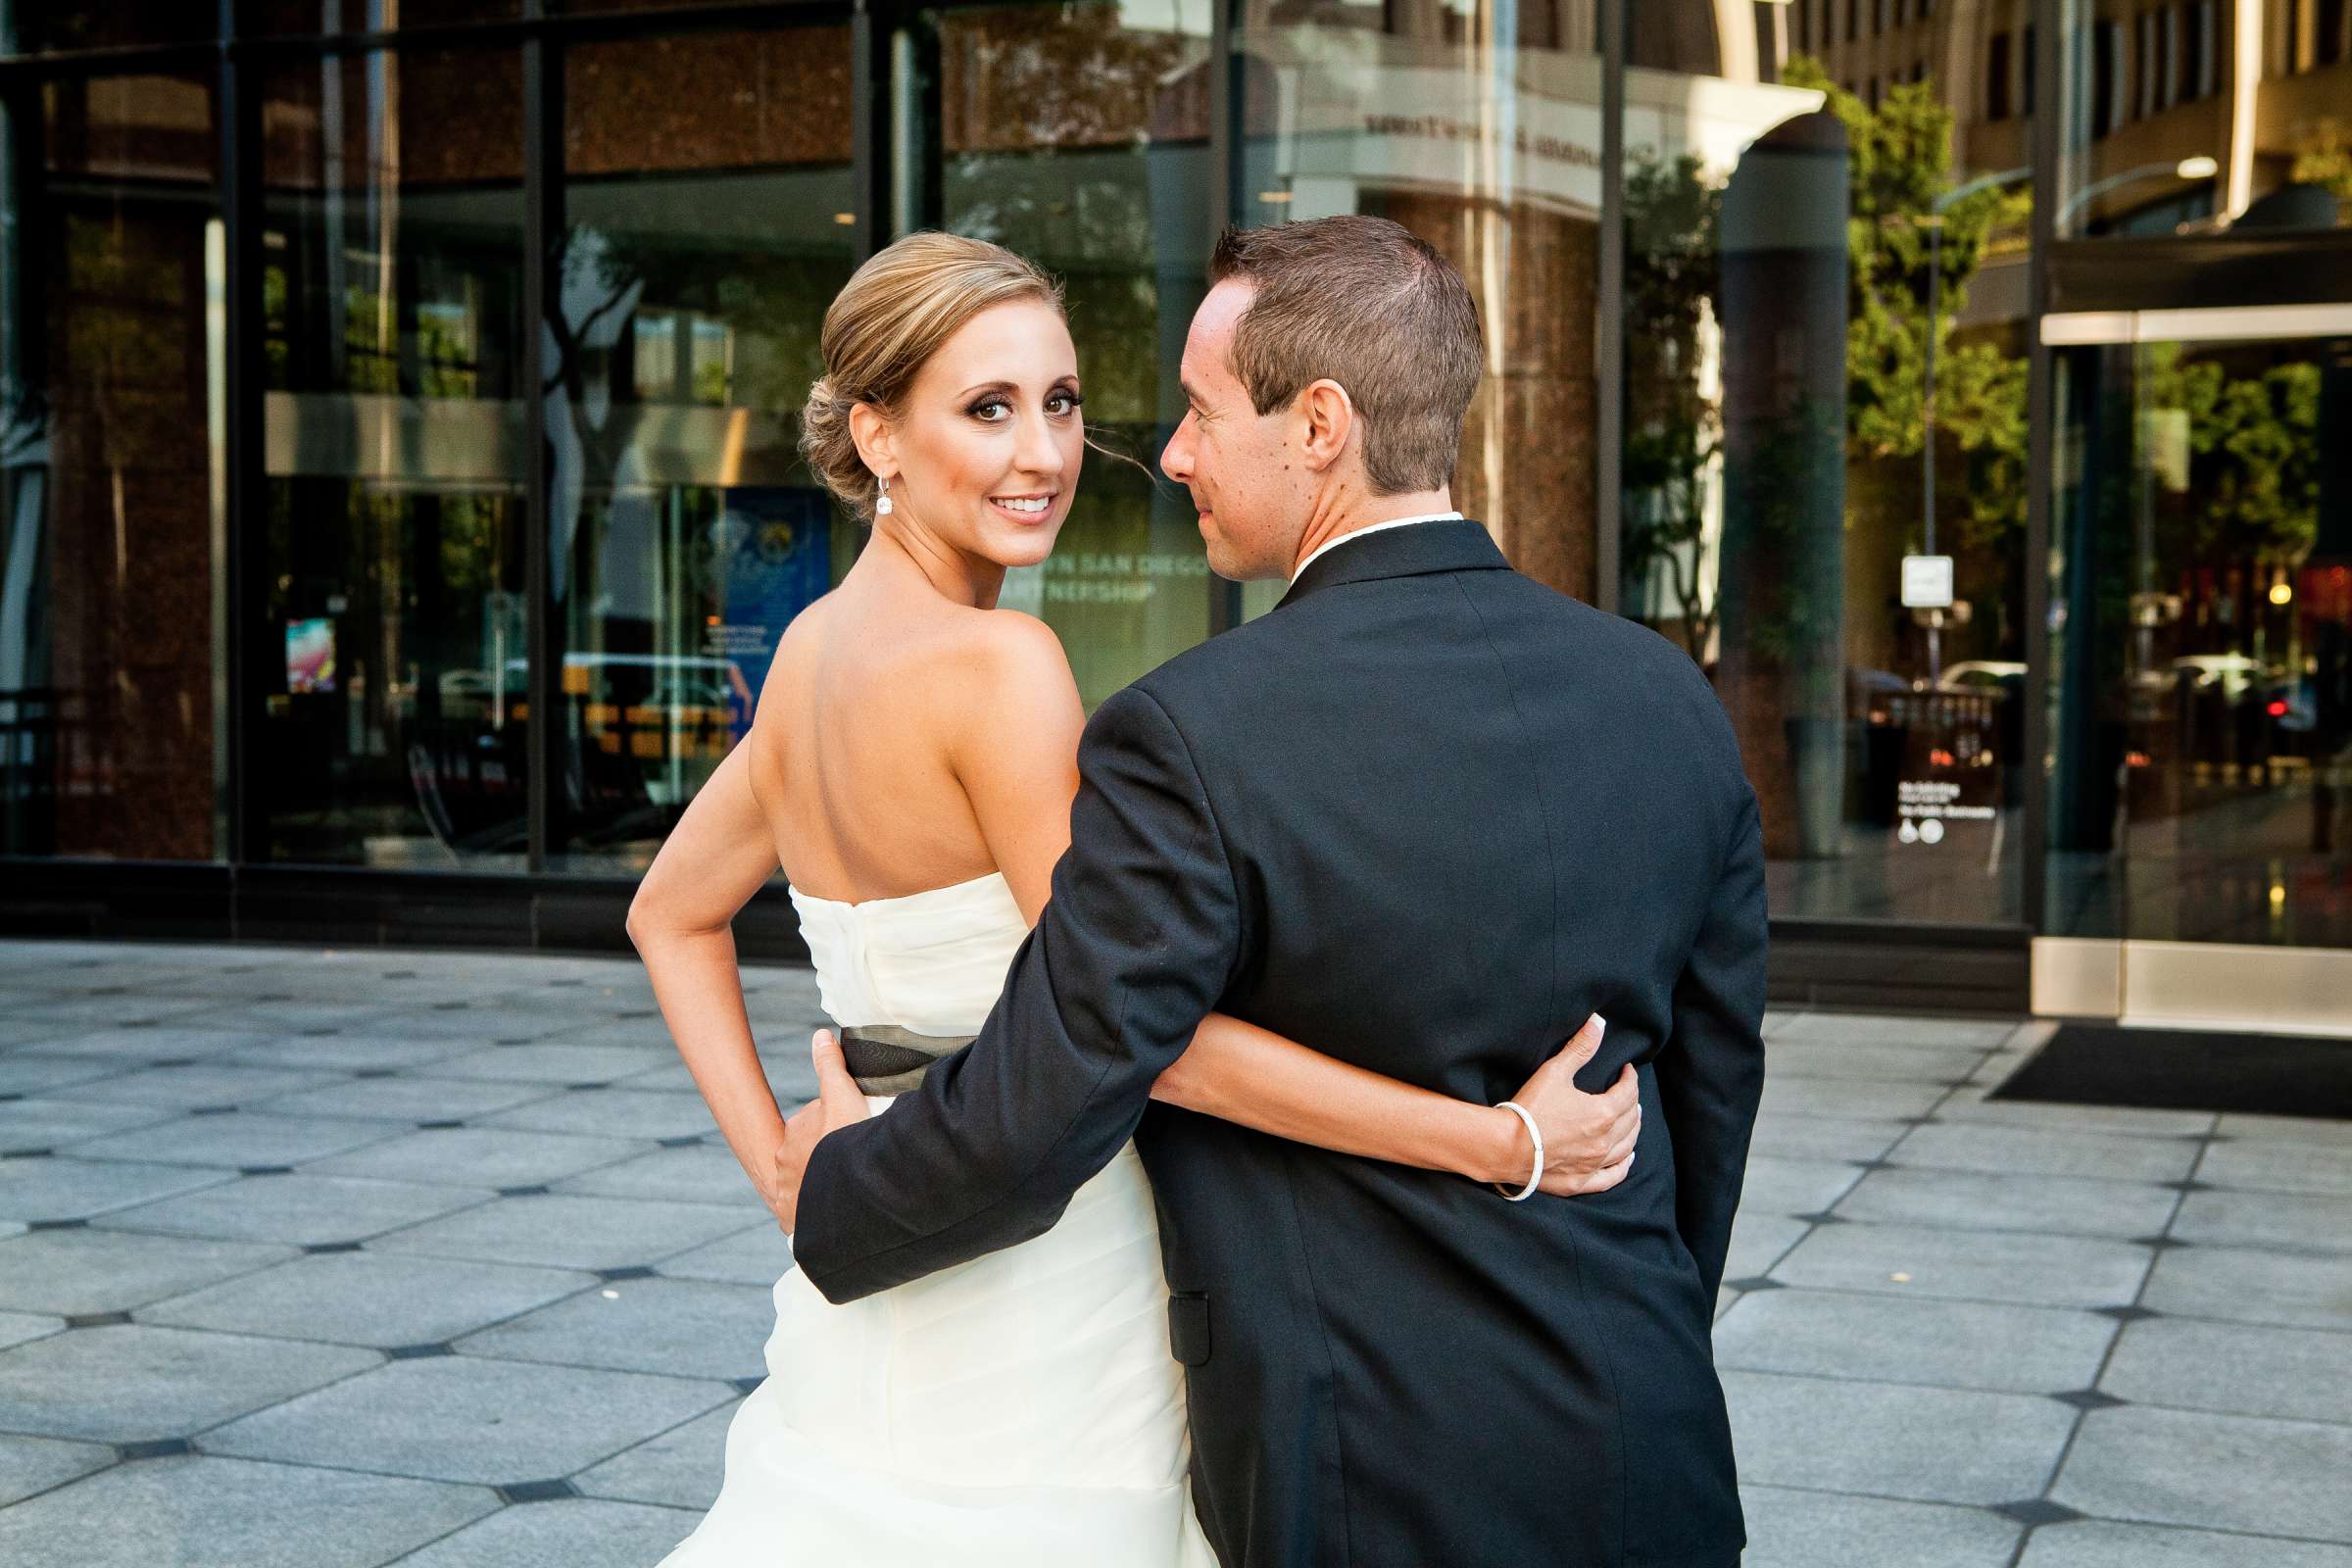 Hotel Palomar San Diego Wedding, Liz and Jeff Wedding Photo #205381 by True Photography